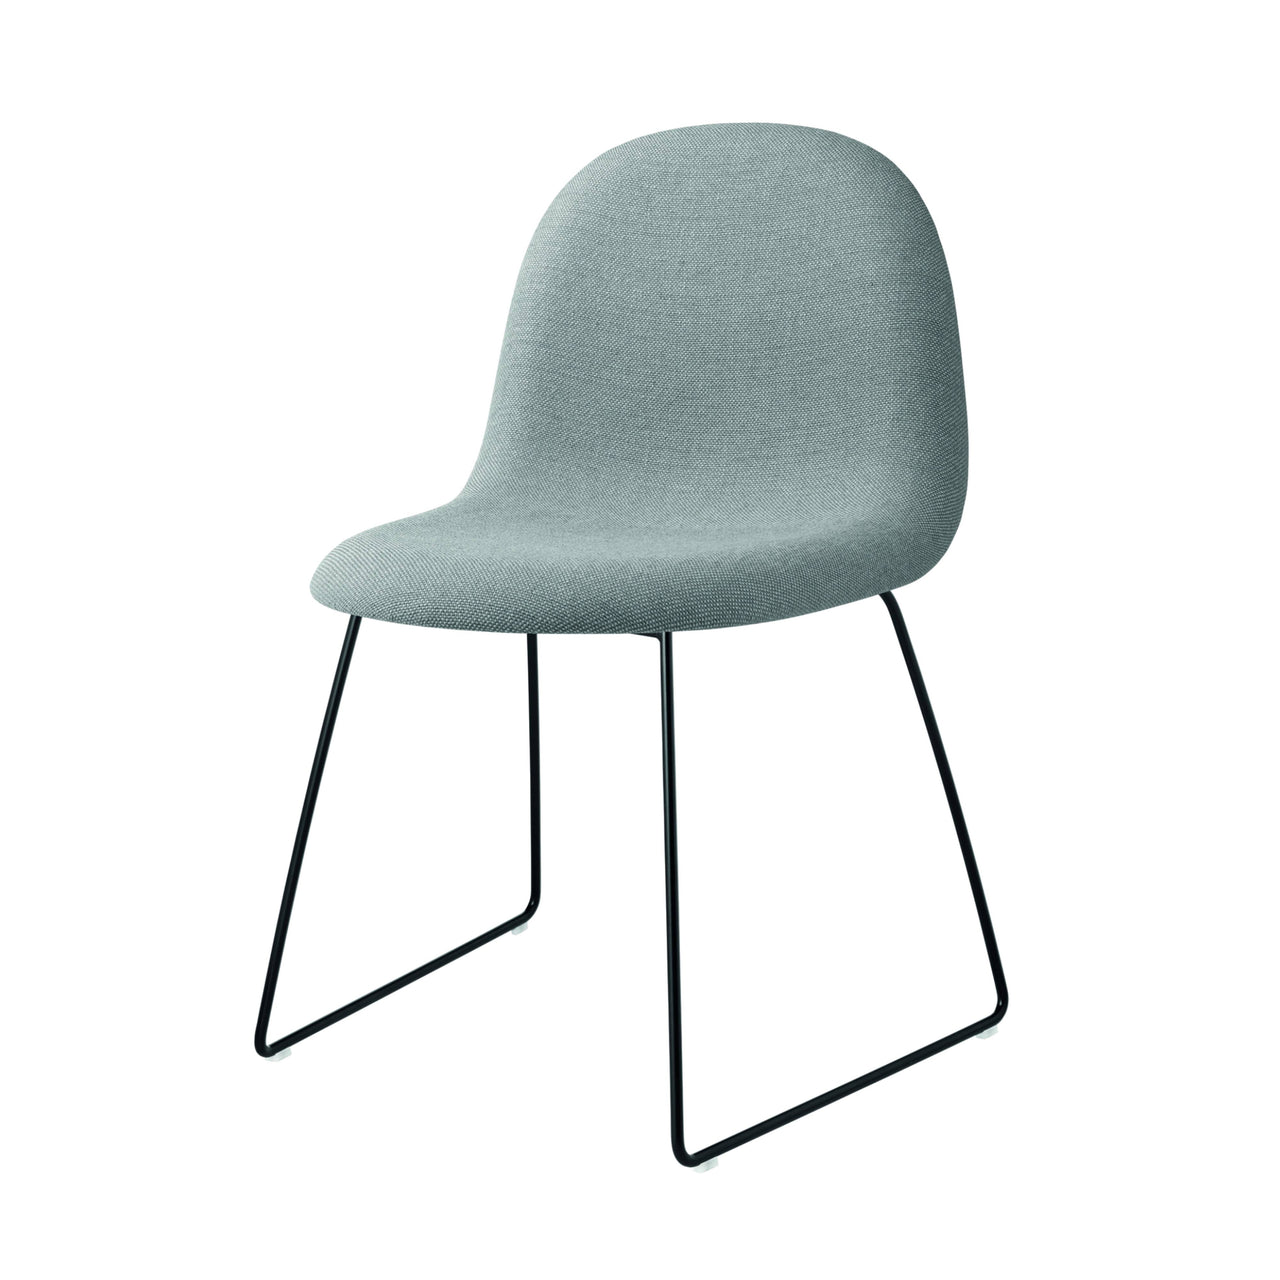 3D Dining Chair: Sledge Base + Full Upholstery + Black Semi Matt